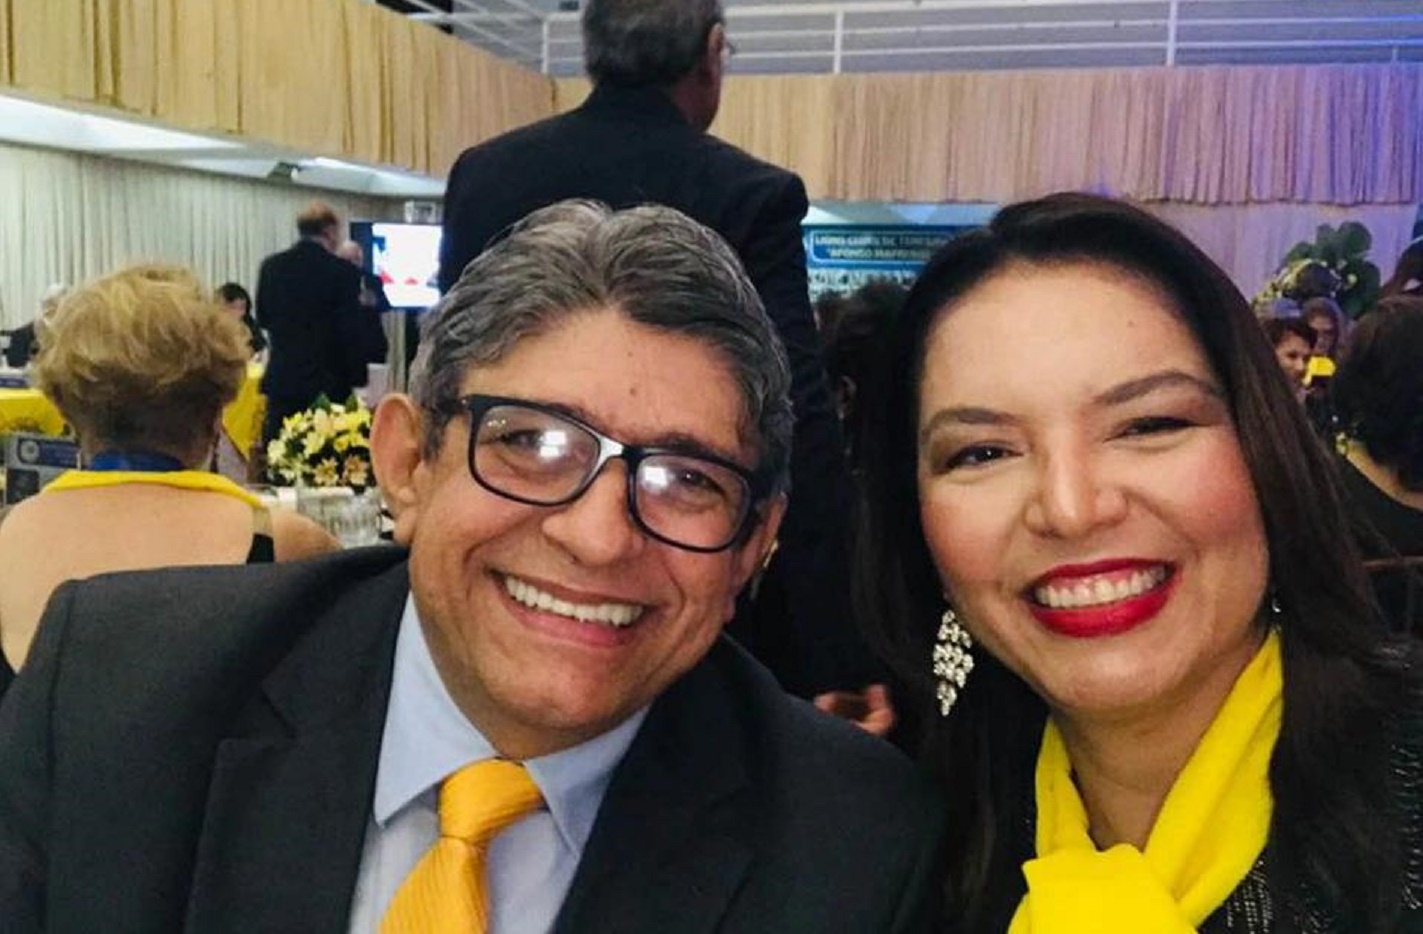 Advogado, Iberê Jôfili Lopes, e sua esposa, a jornalista Fernanda Lopes